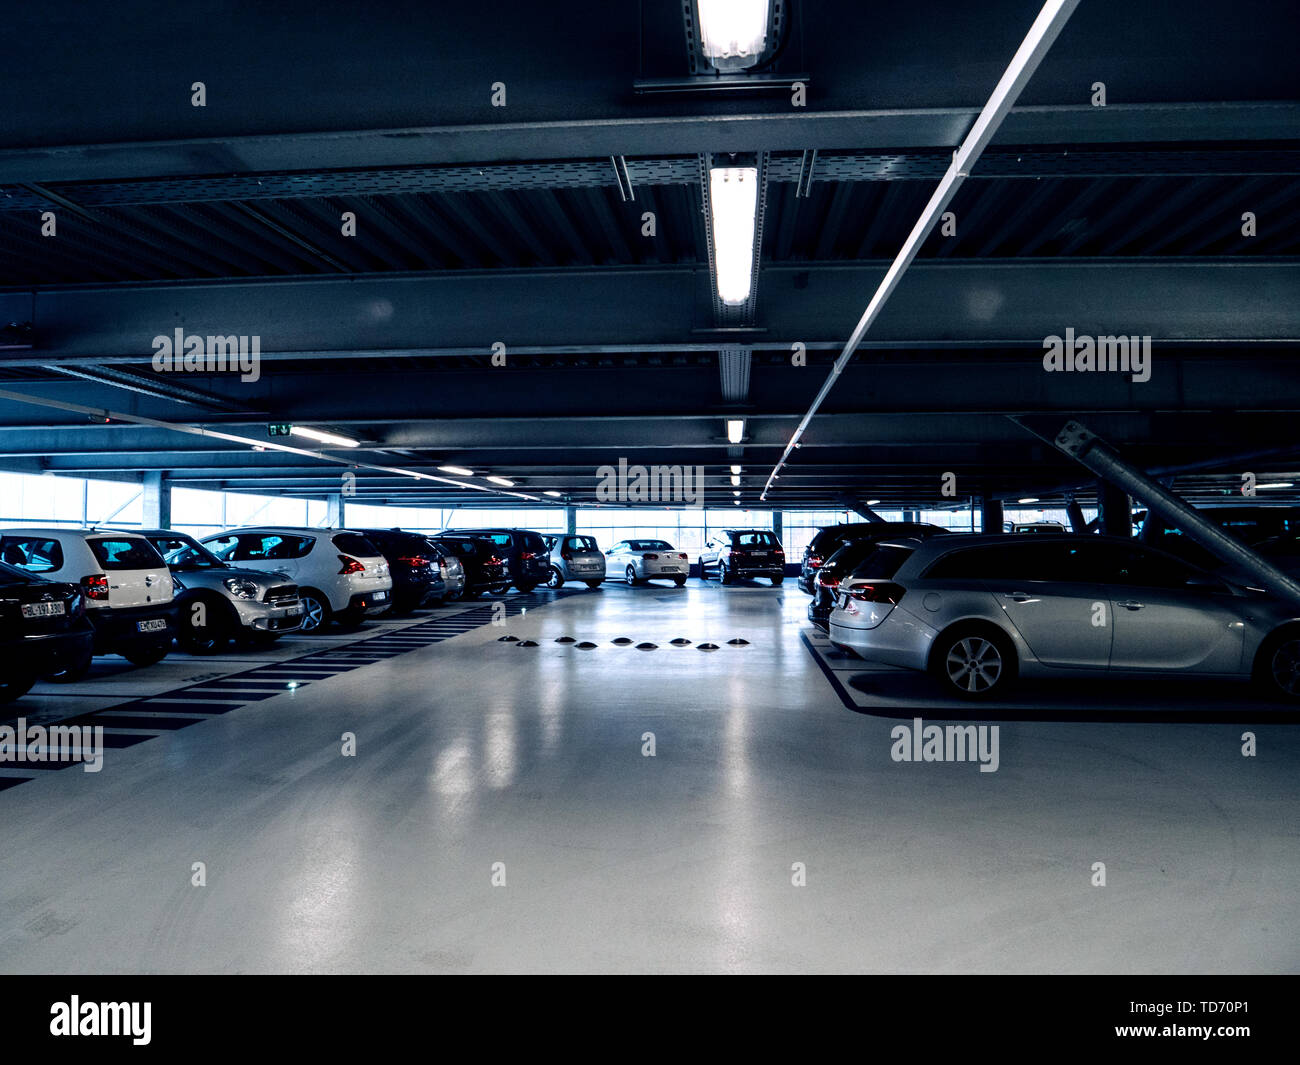 Bâle, Suisse - 14 Nov 2017 : plusieurs voitures garées à l'intérieur du  grand parking à plusieurs niveaux de l'aéroport de Bâle Photo Stock - Alamy